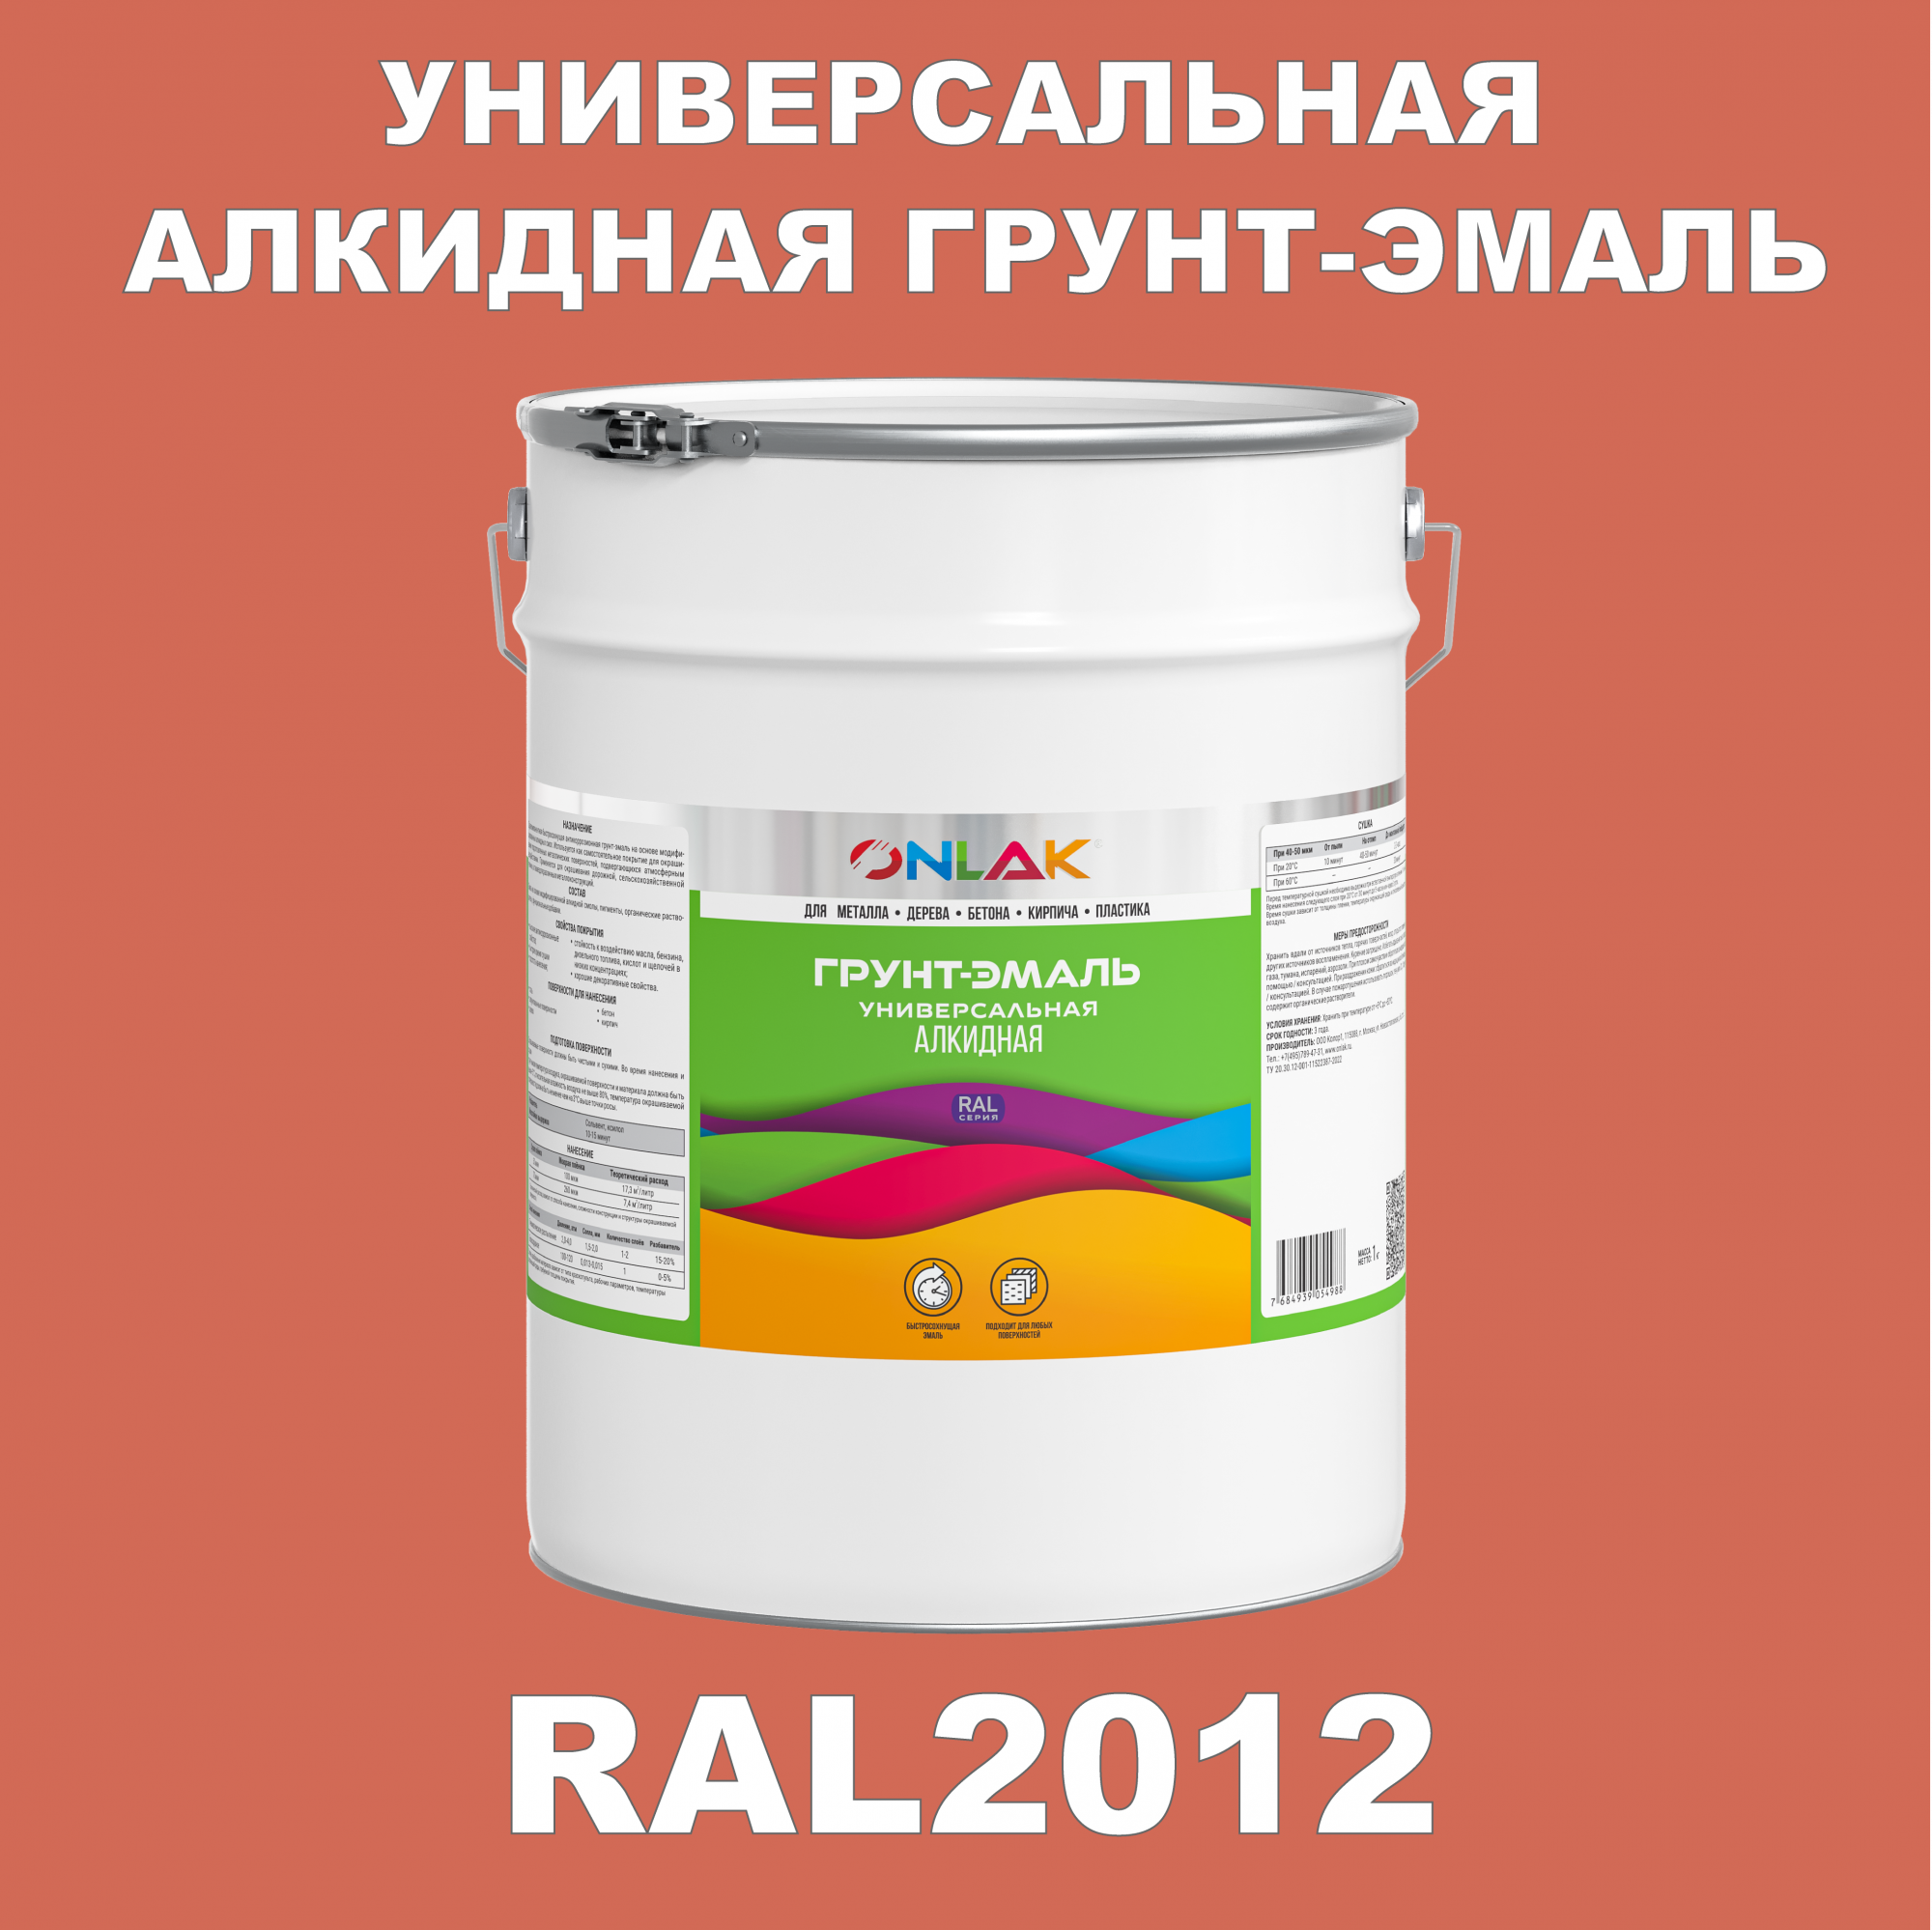 Грунт-эмаль ONLAK 1К RAL2012 антикоррозионная алкидная по металлу по ржавчине 20 кг грунт эмаль престиж по ржавчине алкидная зеленая 1 9 кг